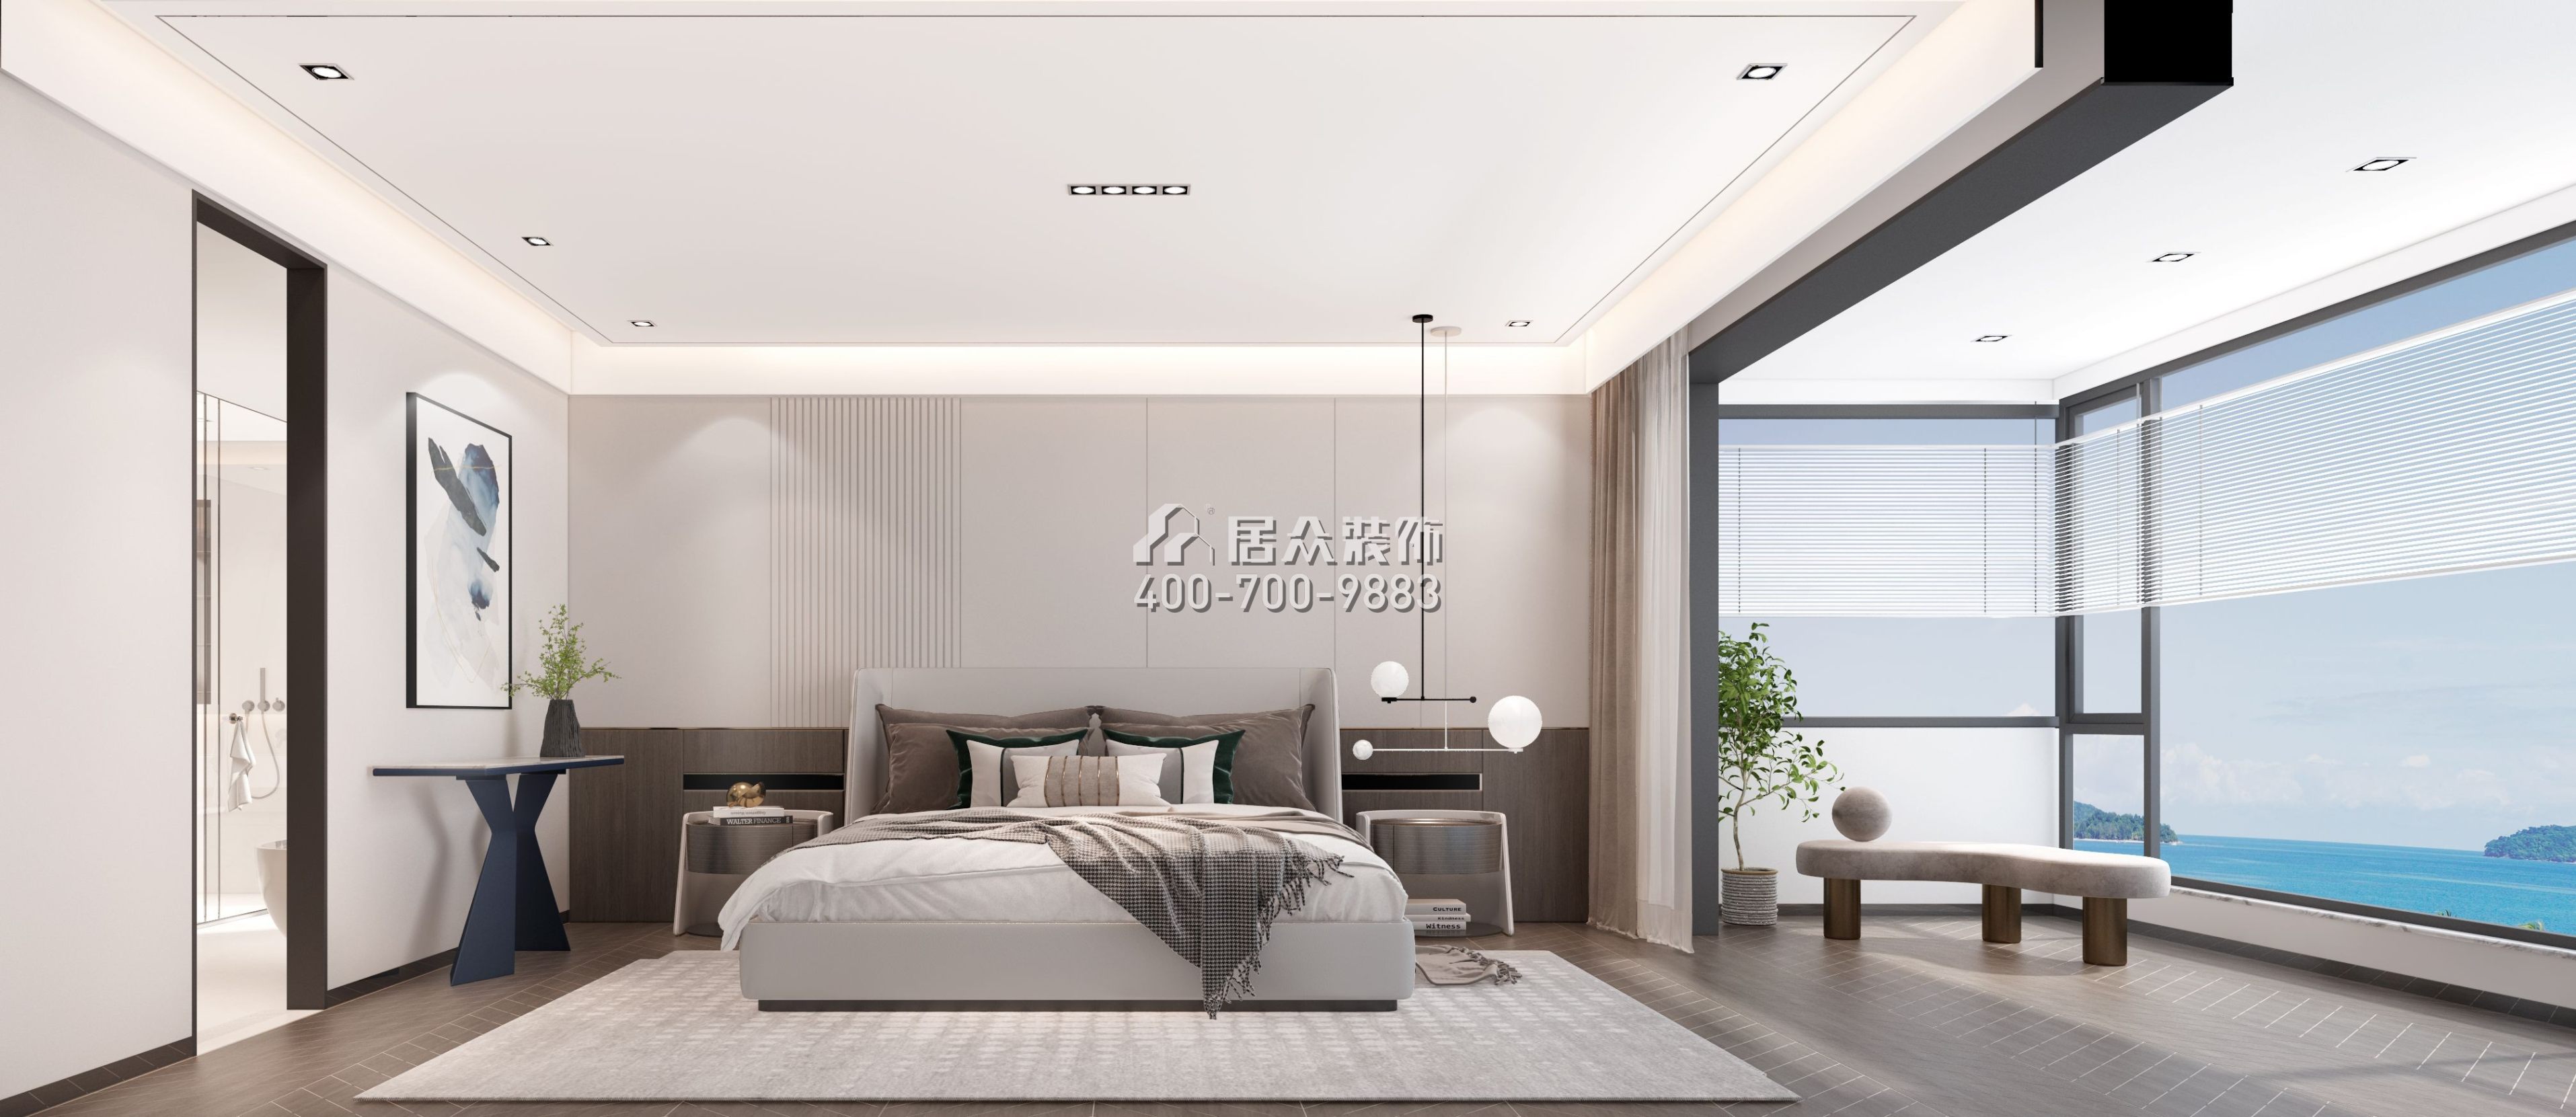 万科温馨家园200平方米现代简约风格平层户型卧室装修效果图